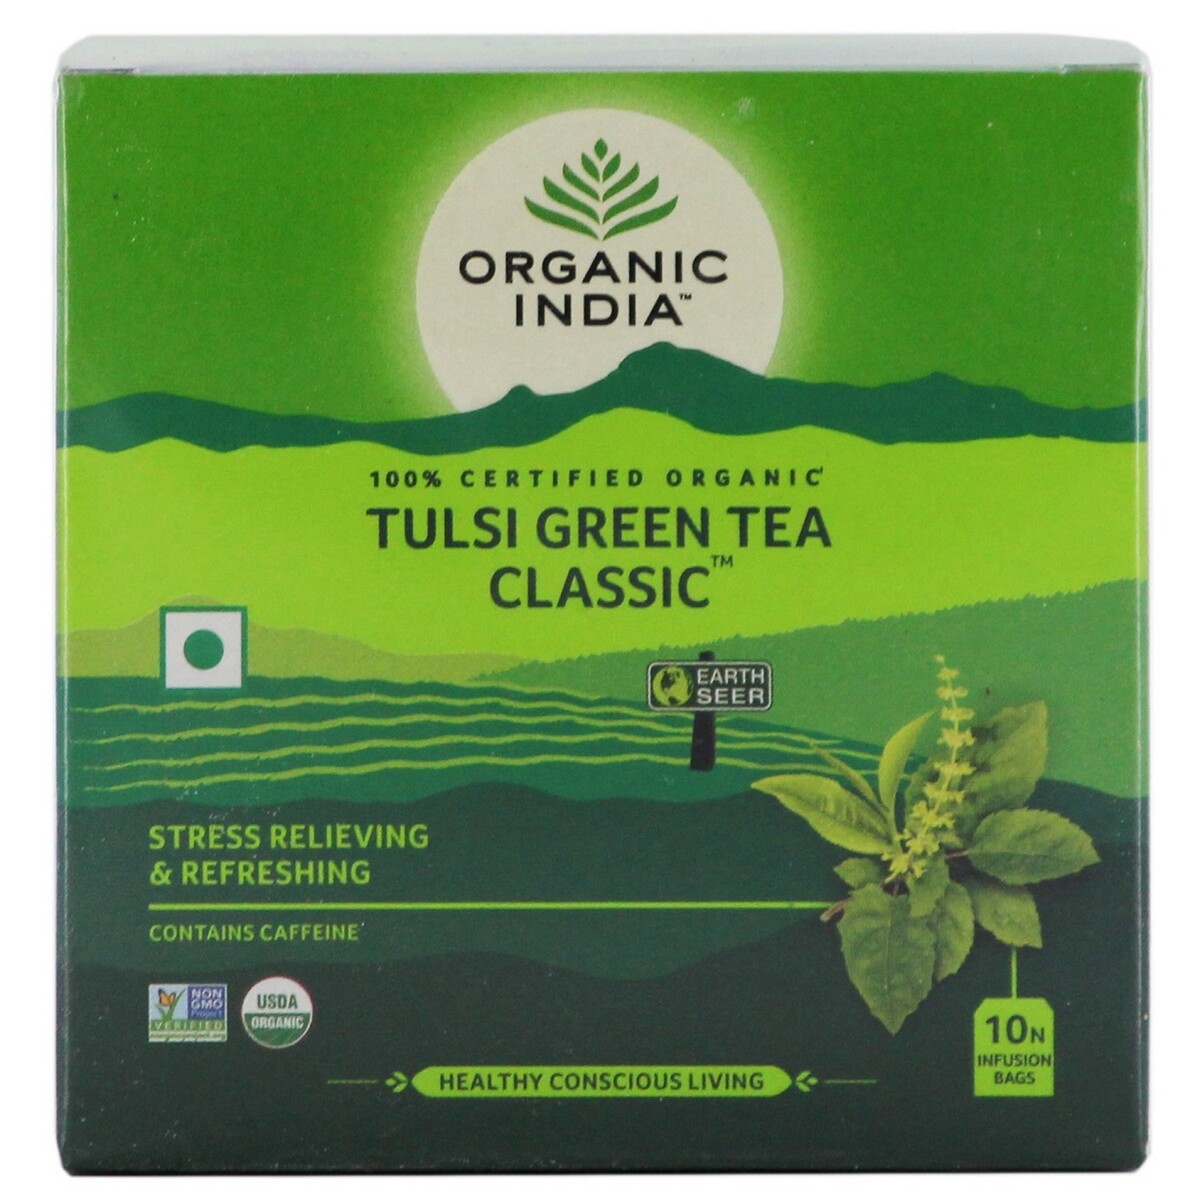 Organic India Tulsi Green Tea Classic 10's